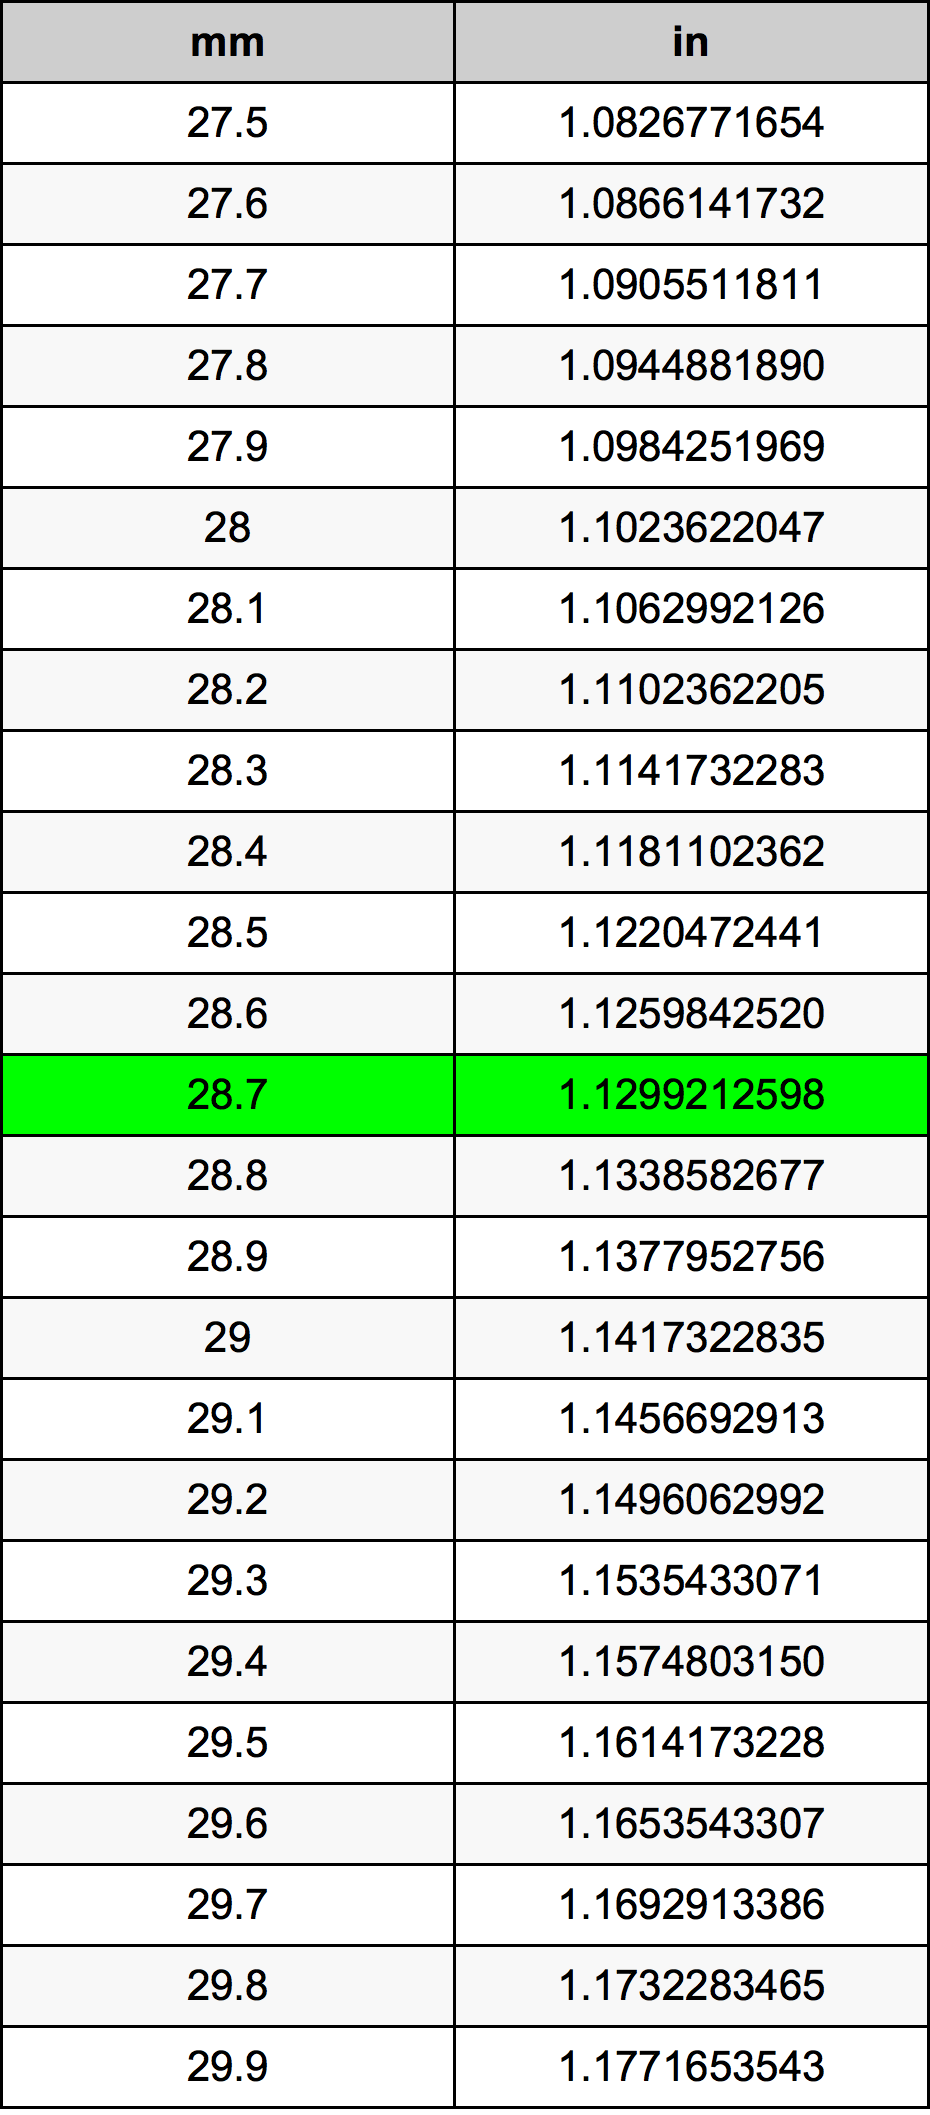 28.7 Milliméter átszámítási táblázat